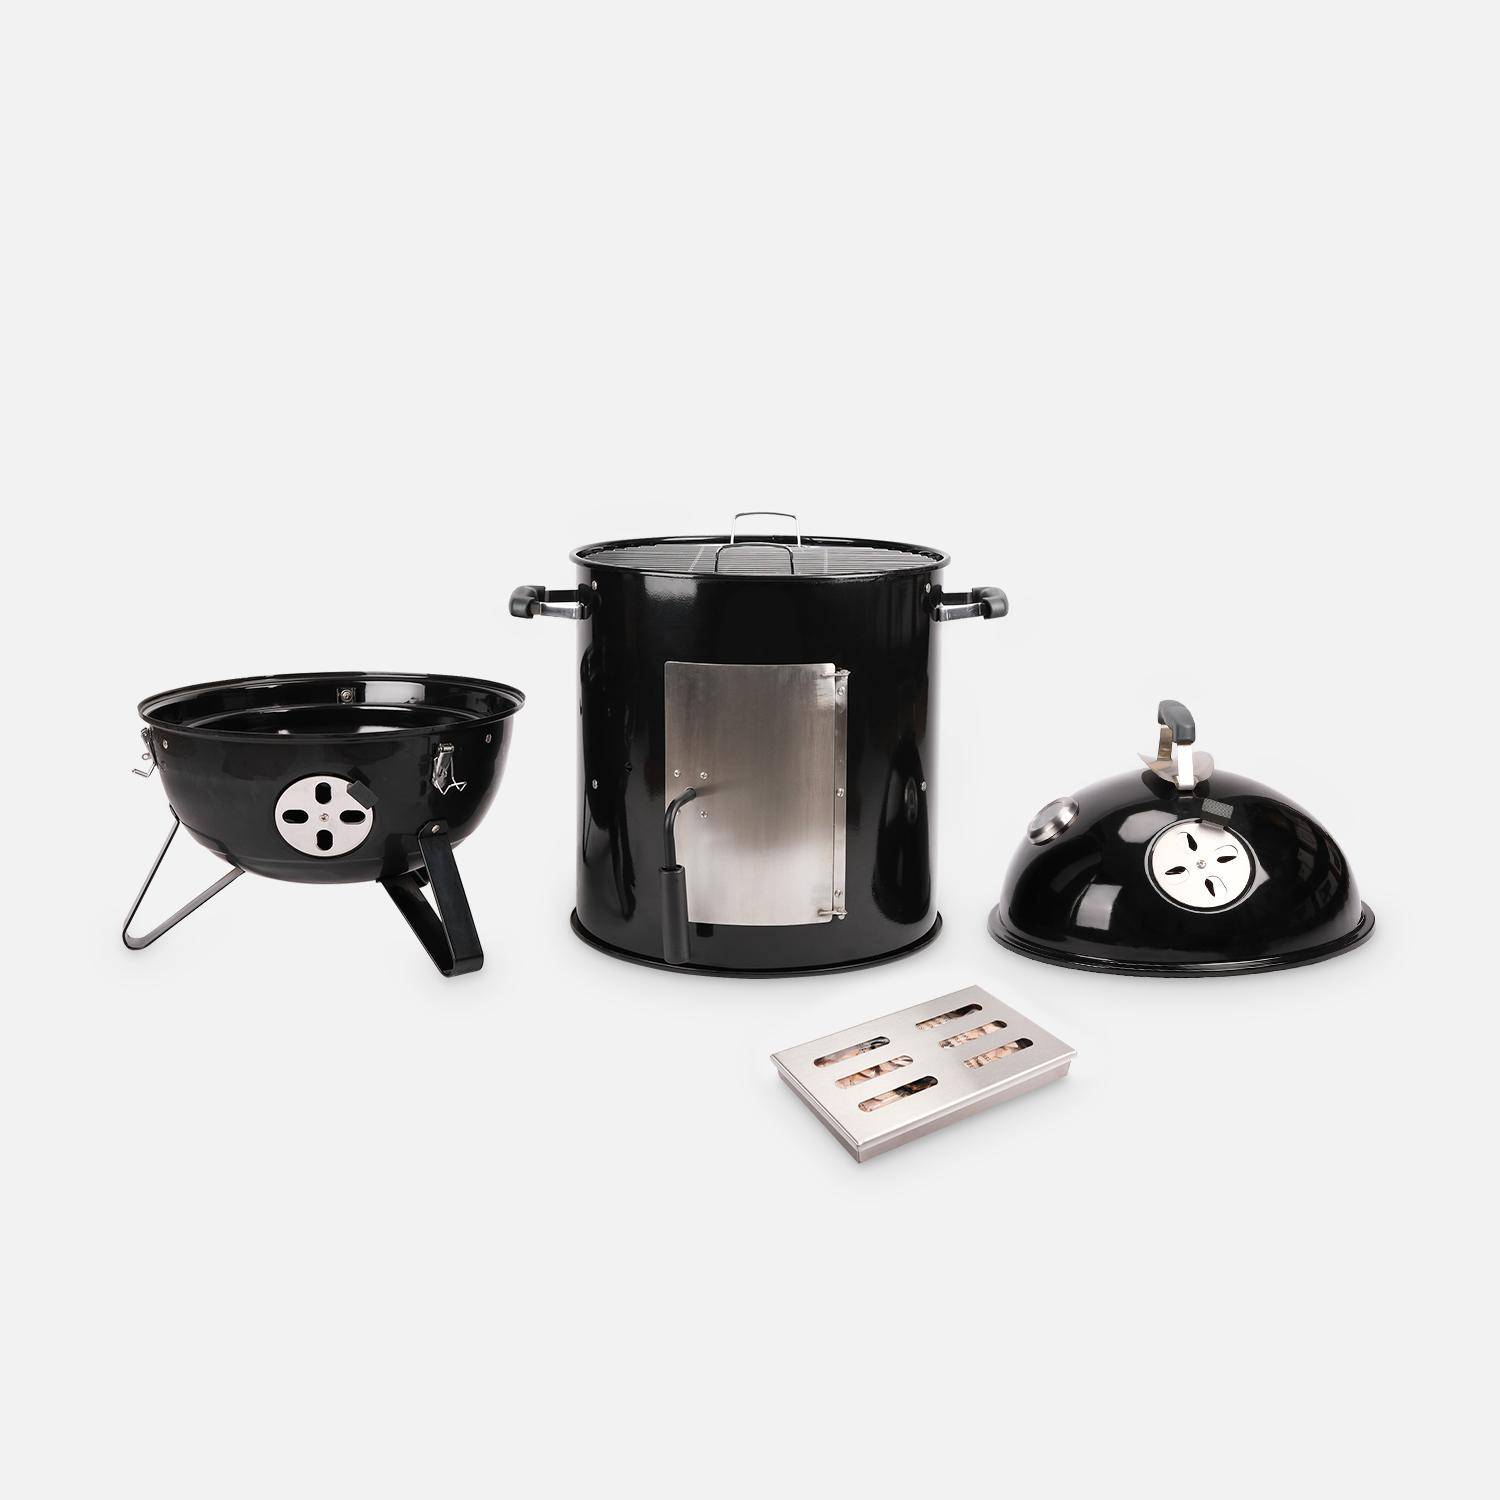 Barbacoa ahumador carbón – Juan – Smoker premium con aireadores, ahumador, gril, compartimento de ahumado negro Photo4